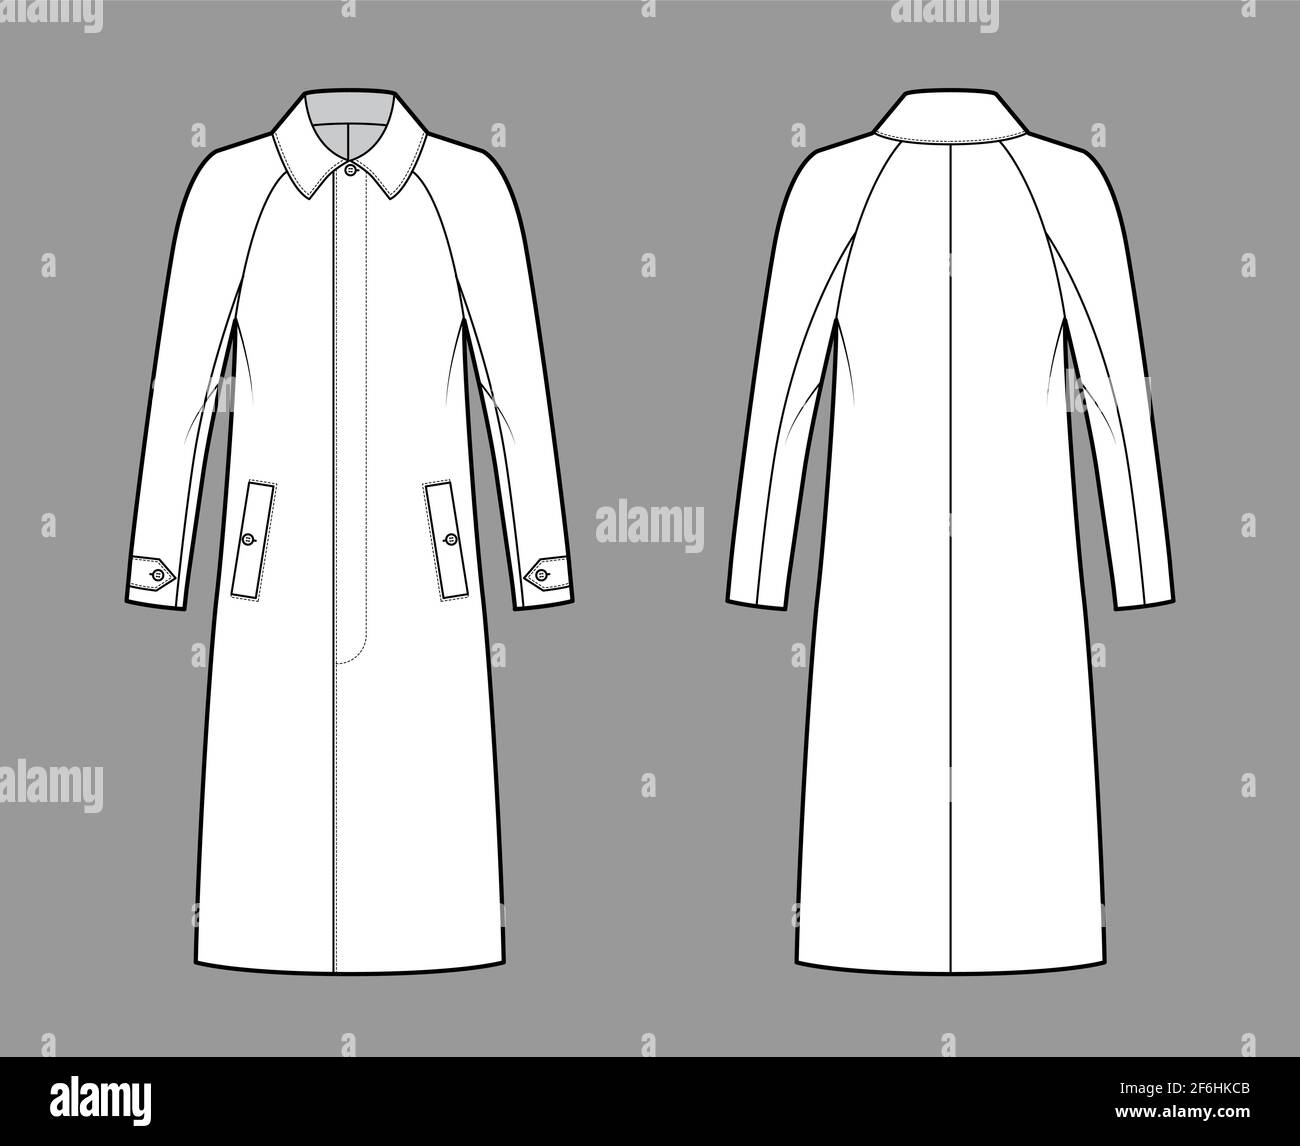 Mackintosh manteau technique mode illustration avec raglan manches longues,  corps surdimensionné, longueur midi. Modèle de veste plate en caoutchouc à  l'avant, à l'arrière et de couleur blanche. Femmes, hommes, unisex top CAD